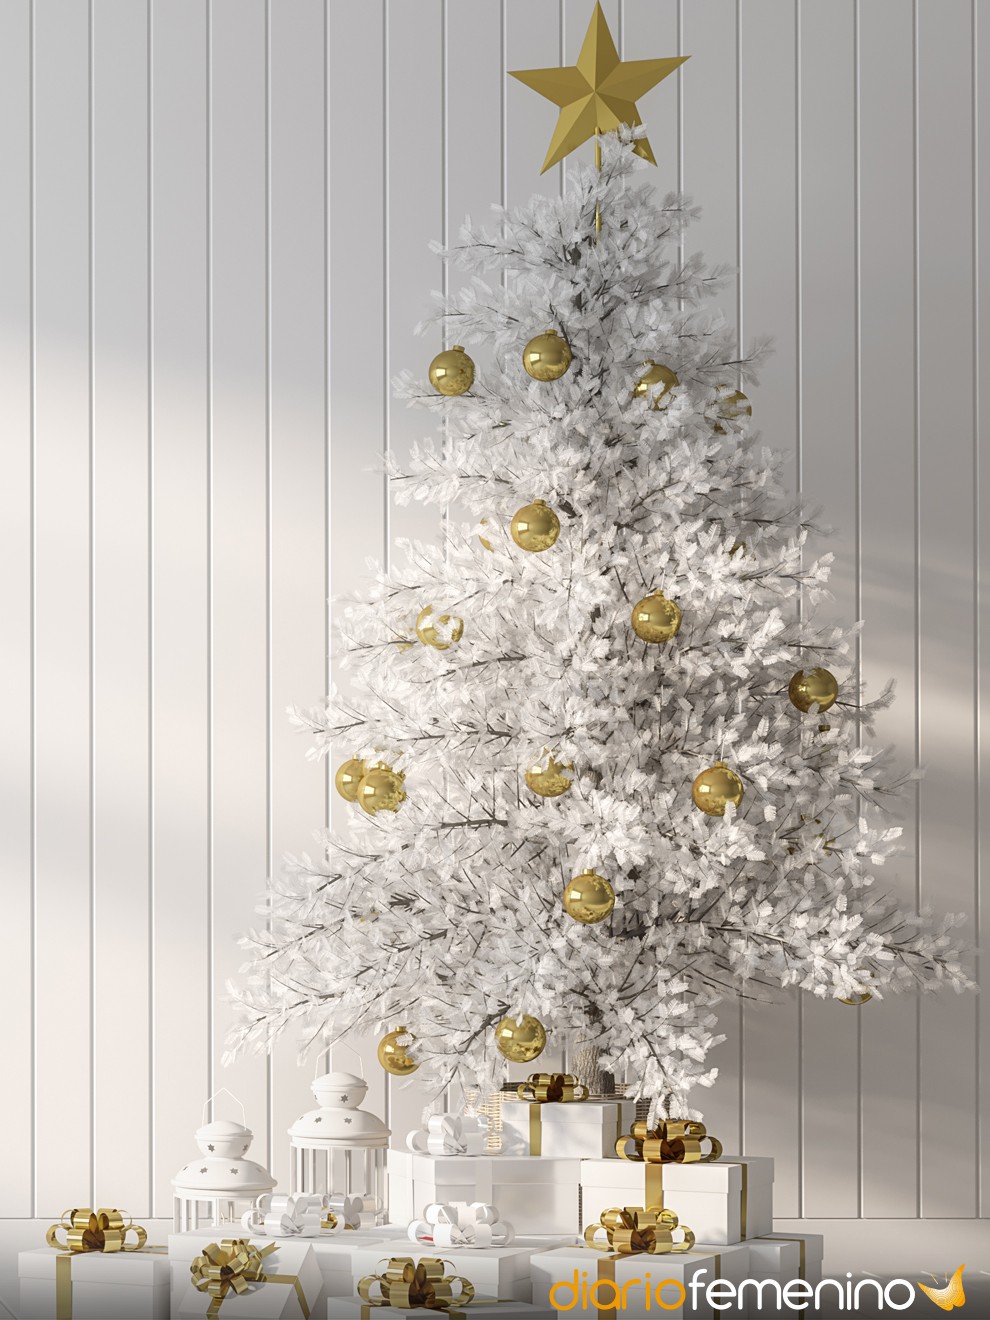 4 ideas para adornar un árbol de Navidad blanco (y que quede genial)